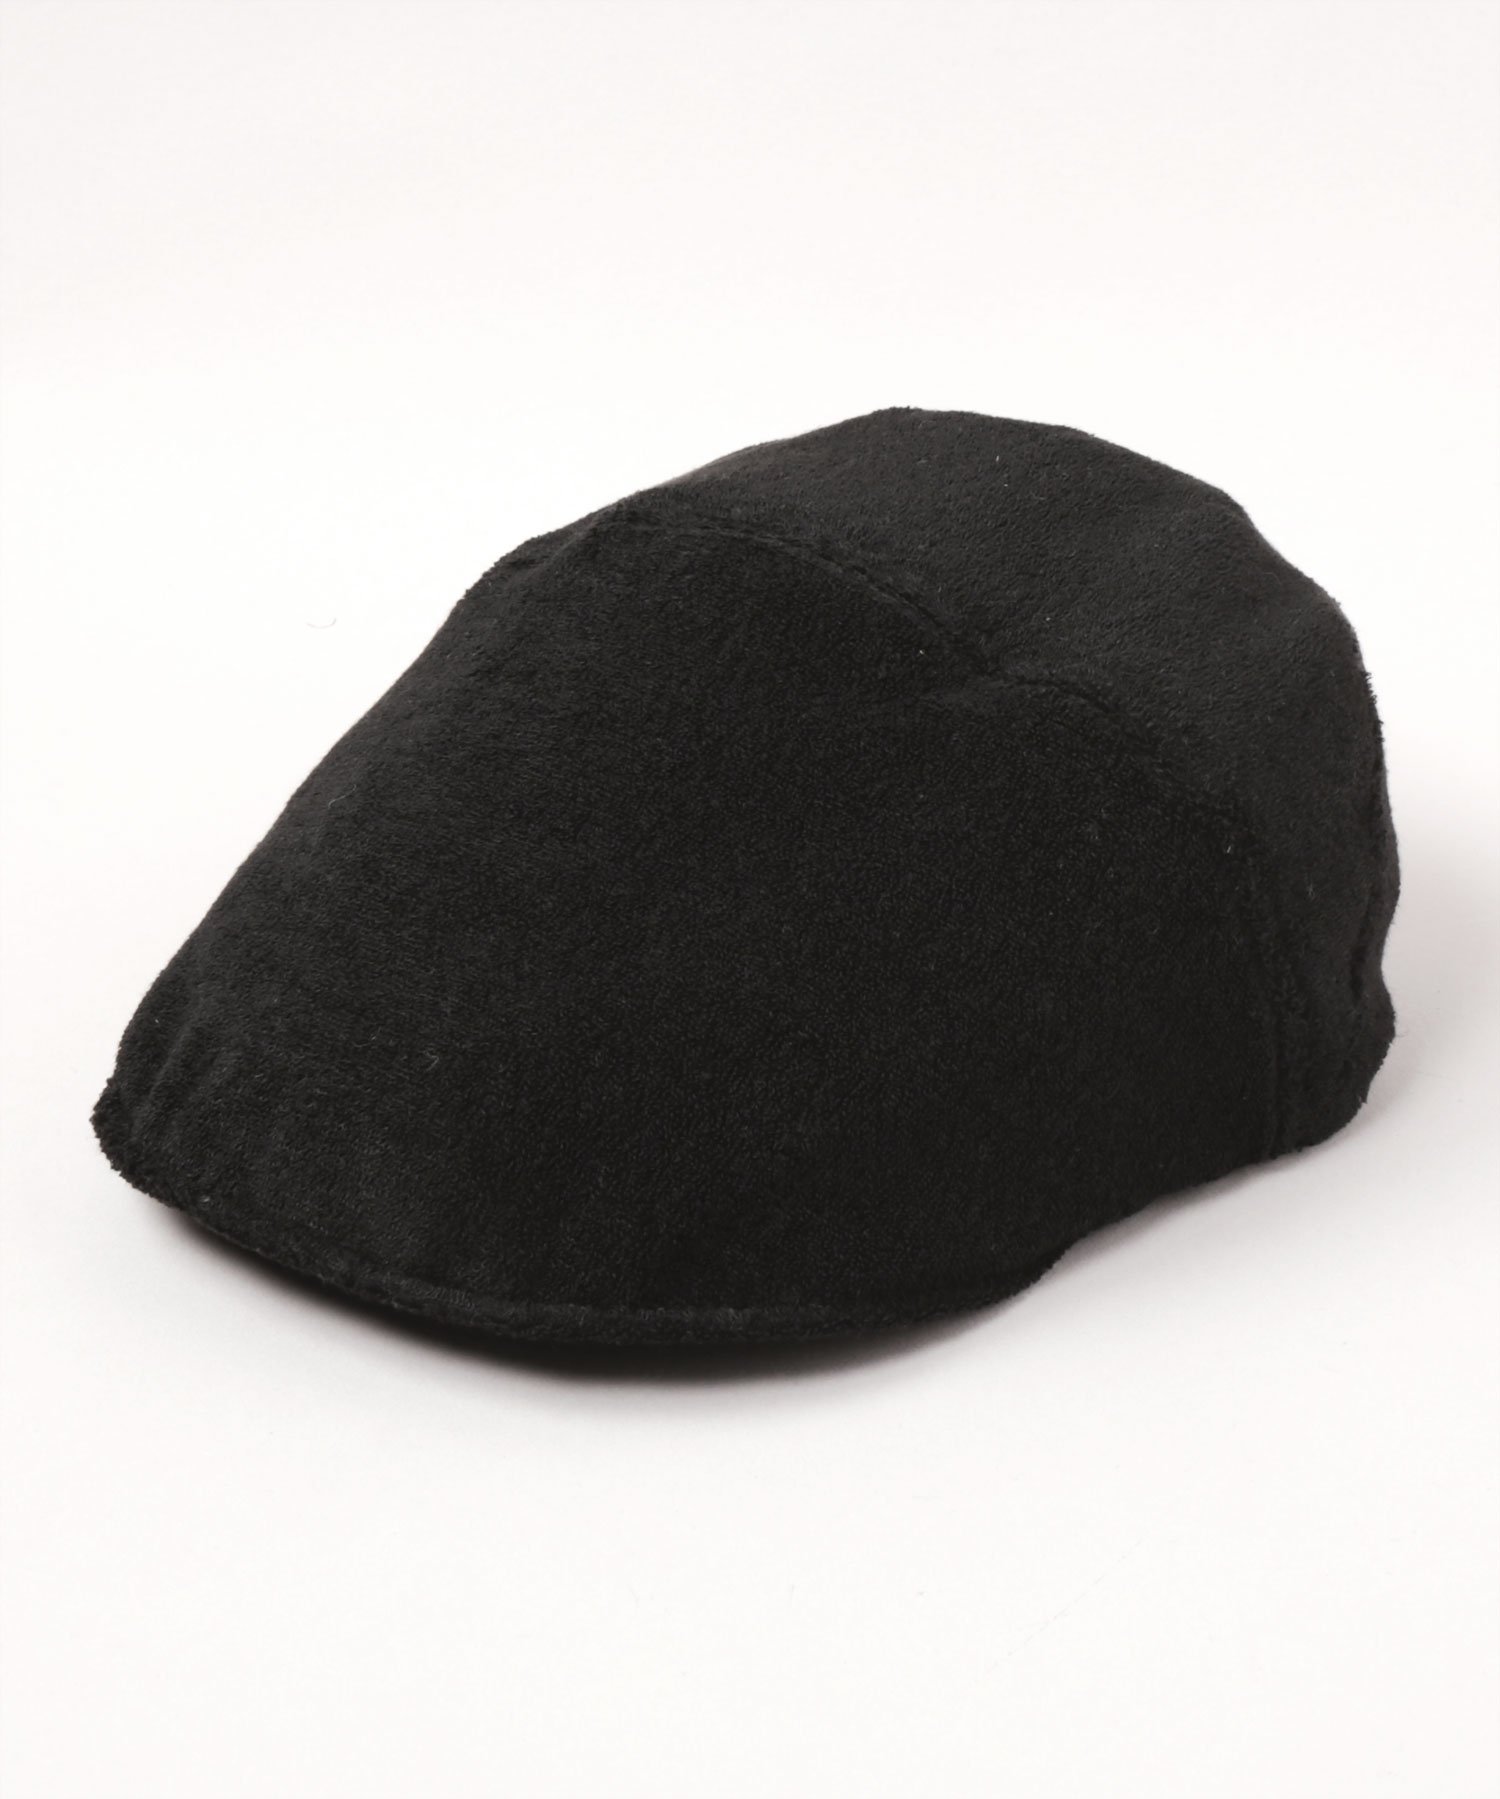 カシラ 帽子 メンズ CA4LA HK PILE HUNTI カシラ 帽子 ハンチング・ベレー帽 ブラック ベージュ ネイビー【送料無料】